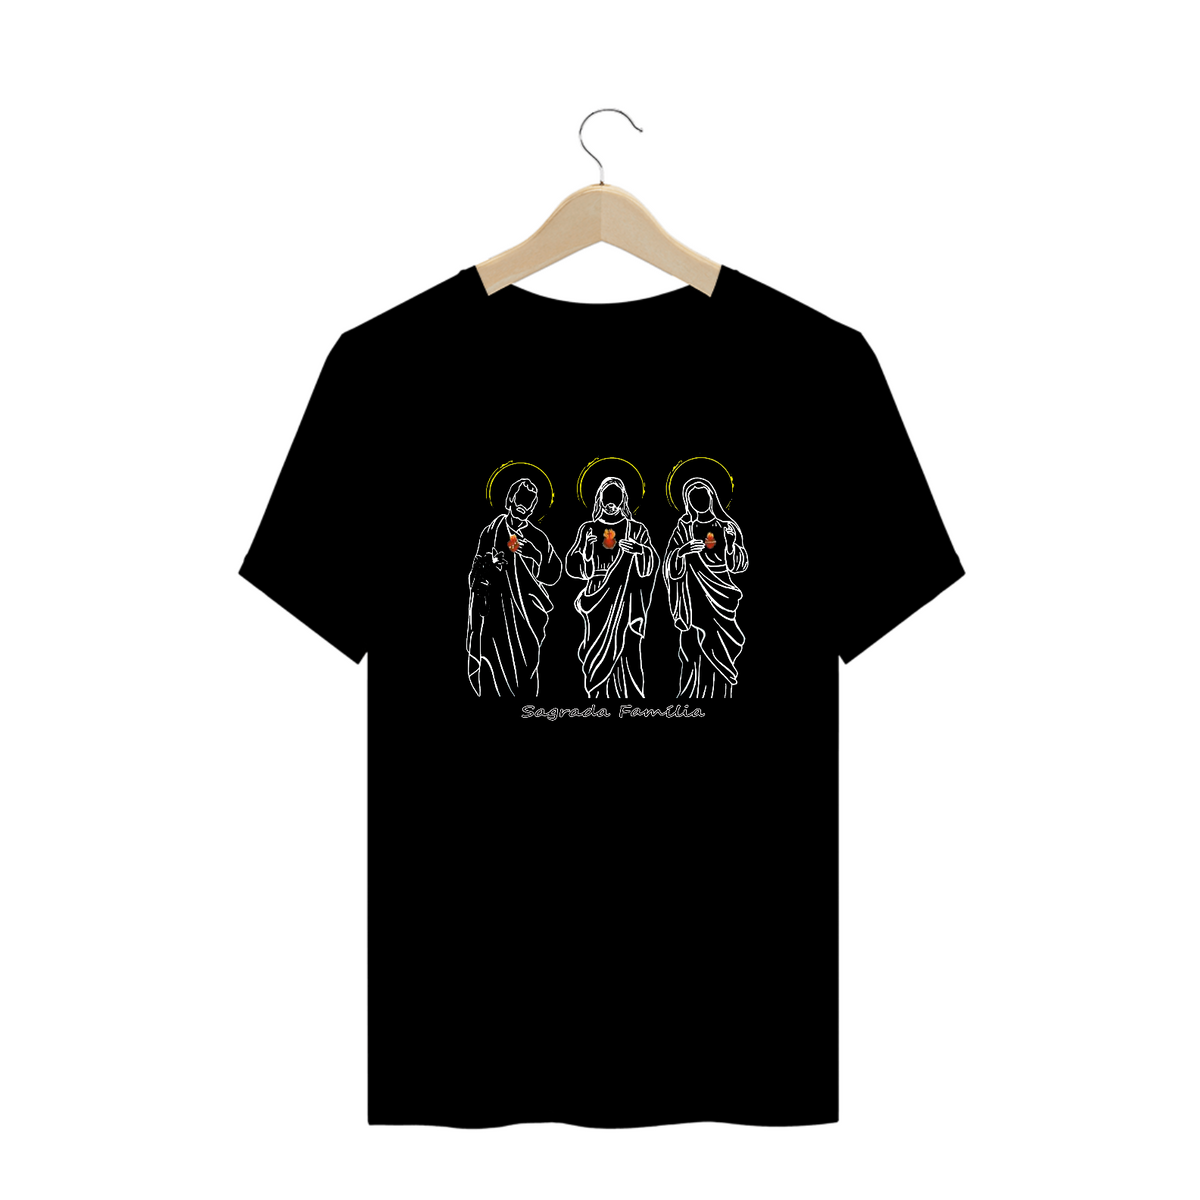 Nome do produto: Camiseta plus size Sagrada Família